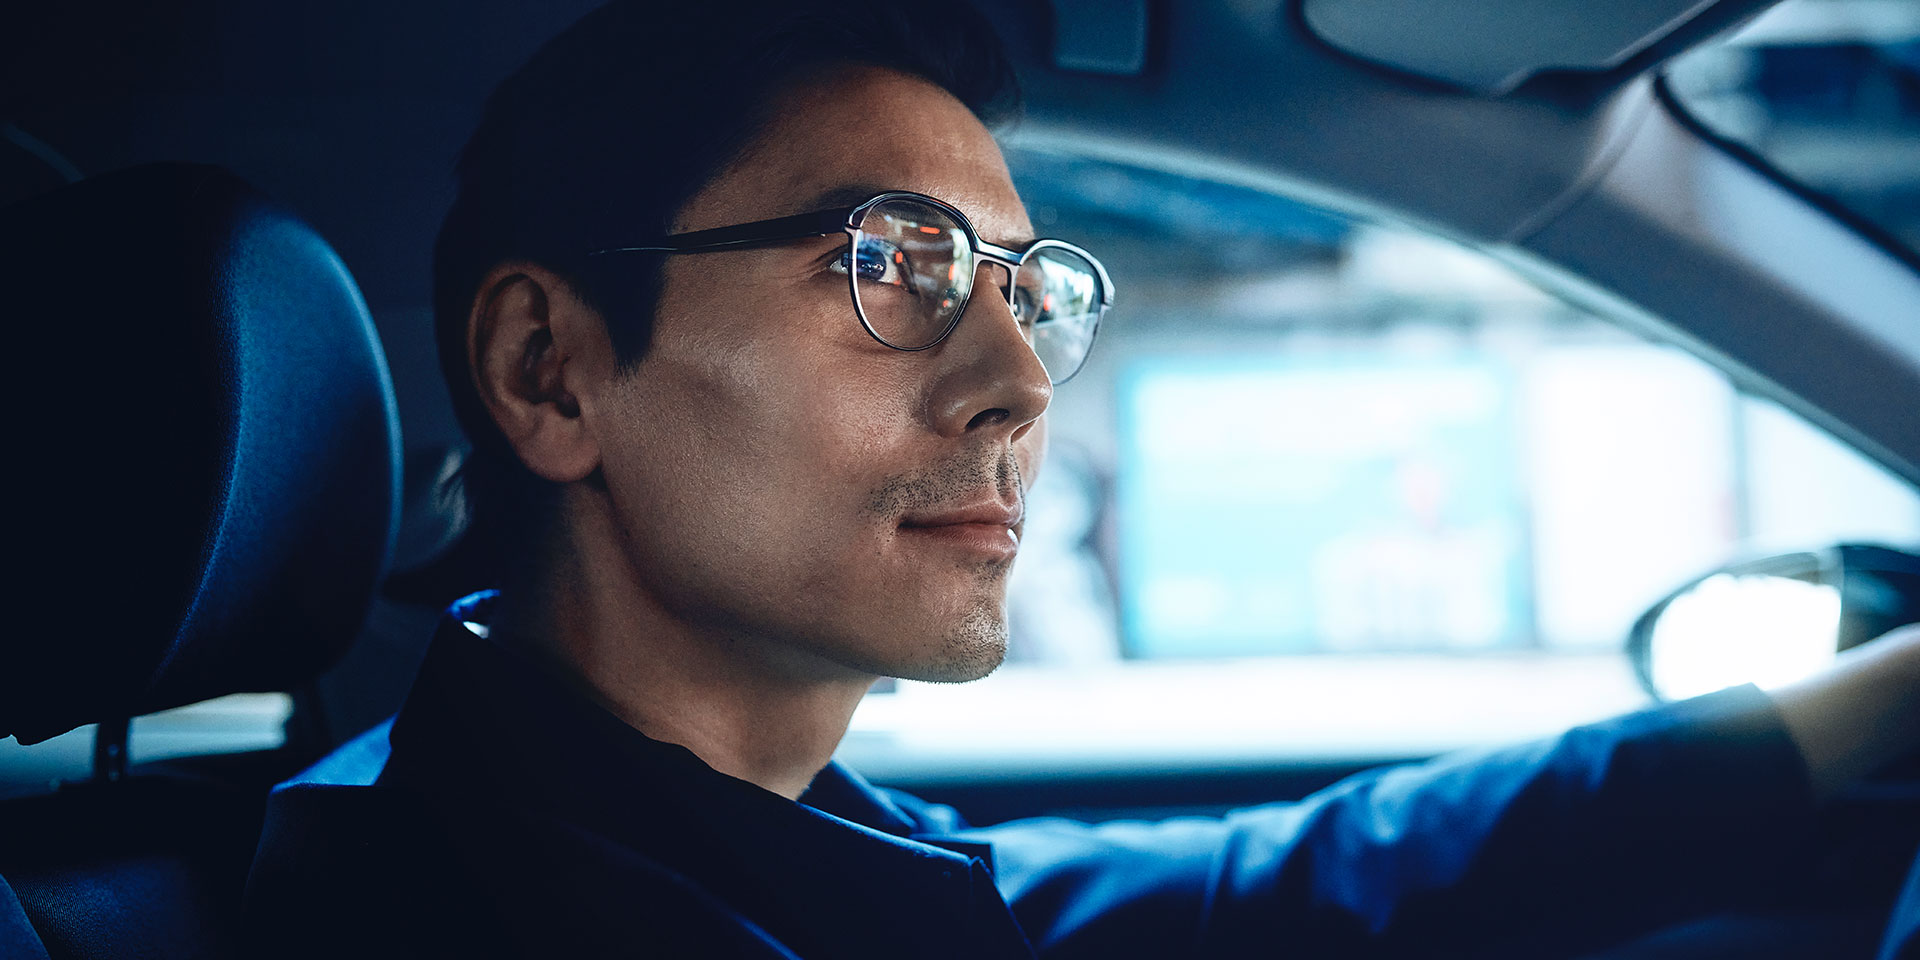 Mand der kører i en bil og ser selvsikker ud med et lille smil på vejen. Han har ZEISS DriveSafe briller med enkeltstyrke på.